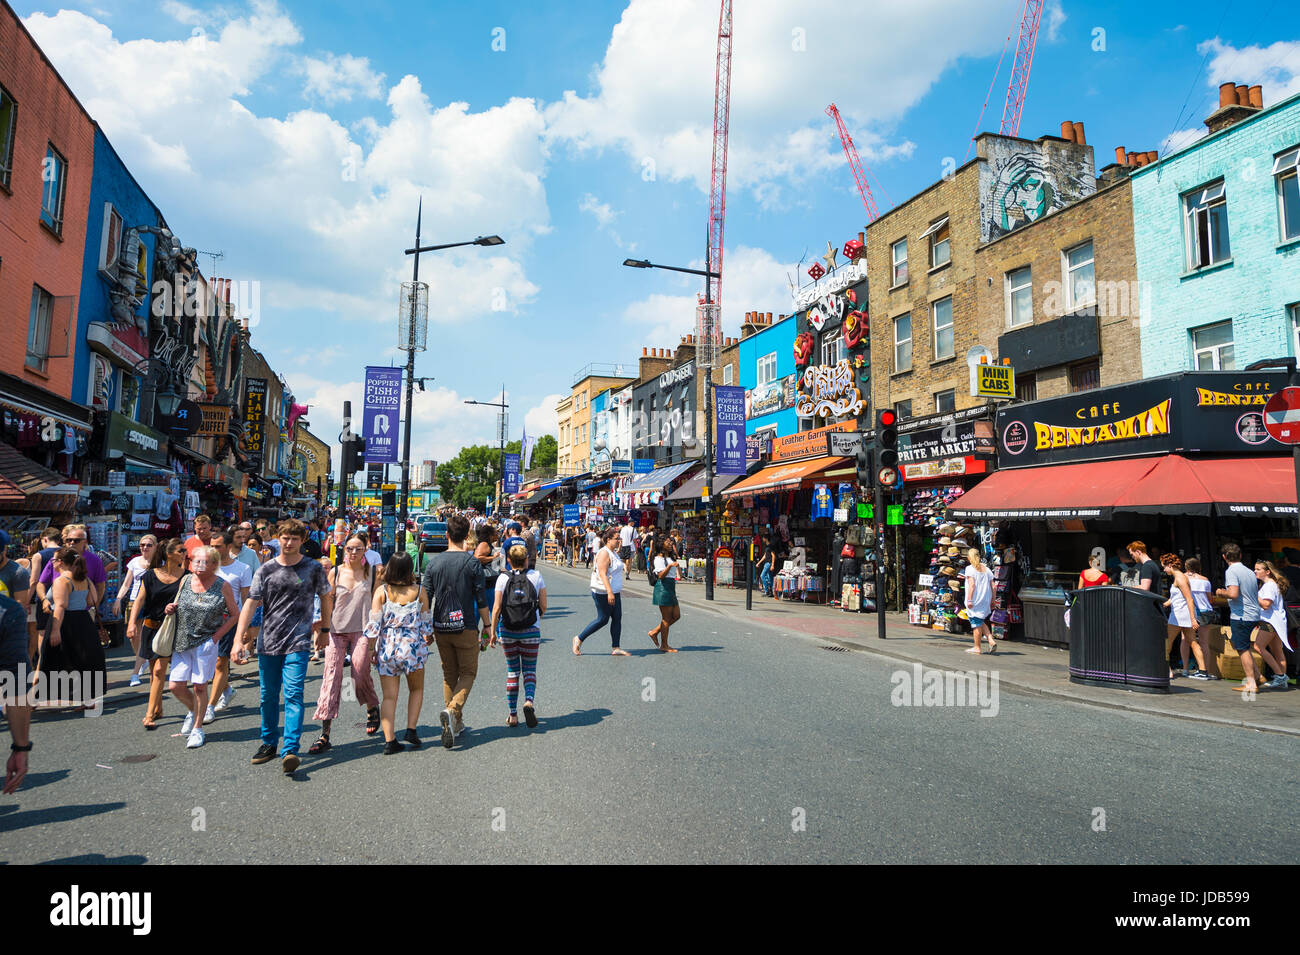 Londres - le 18 juin 2017 : Les gens d'explorer l'animation Marché de Camden de Londres sur la journée d'été ensoleillée. Banque D'Images